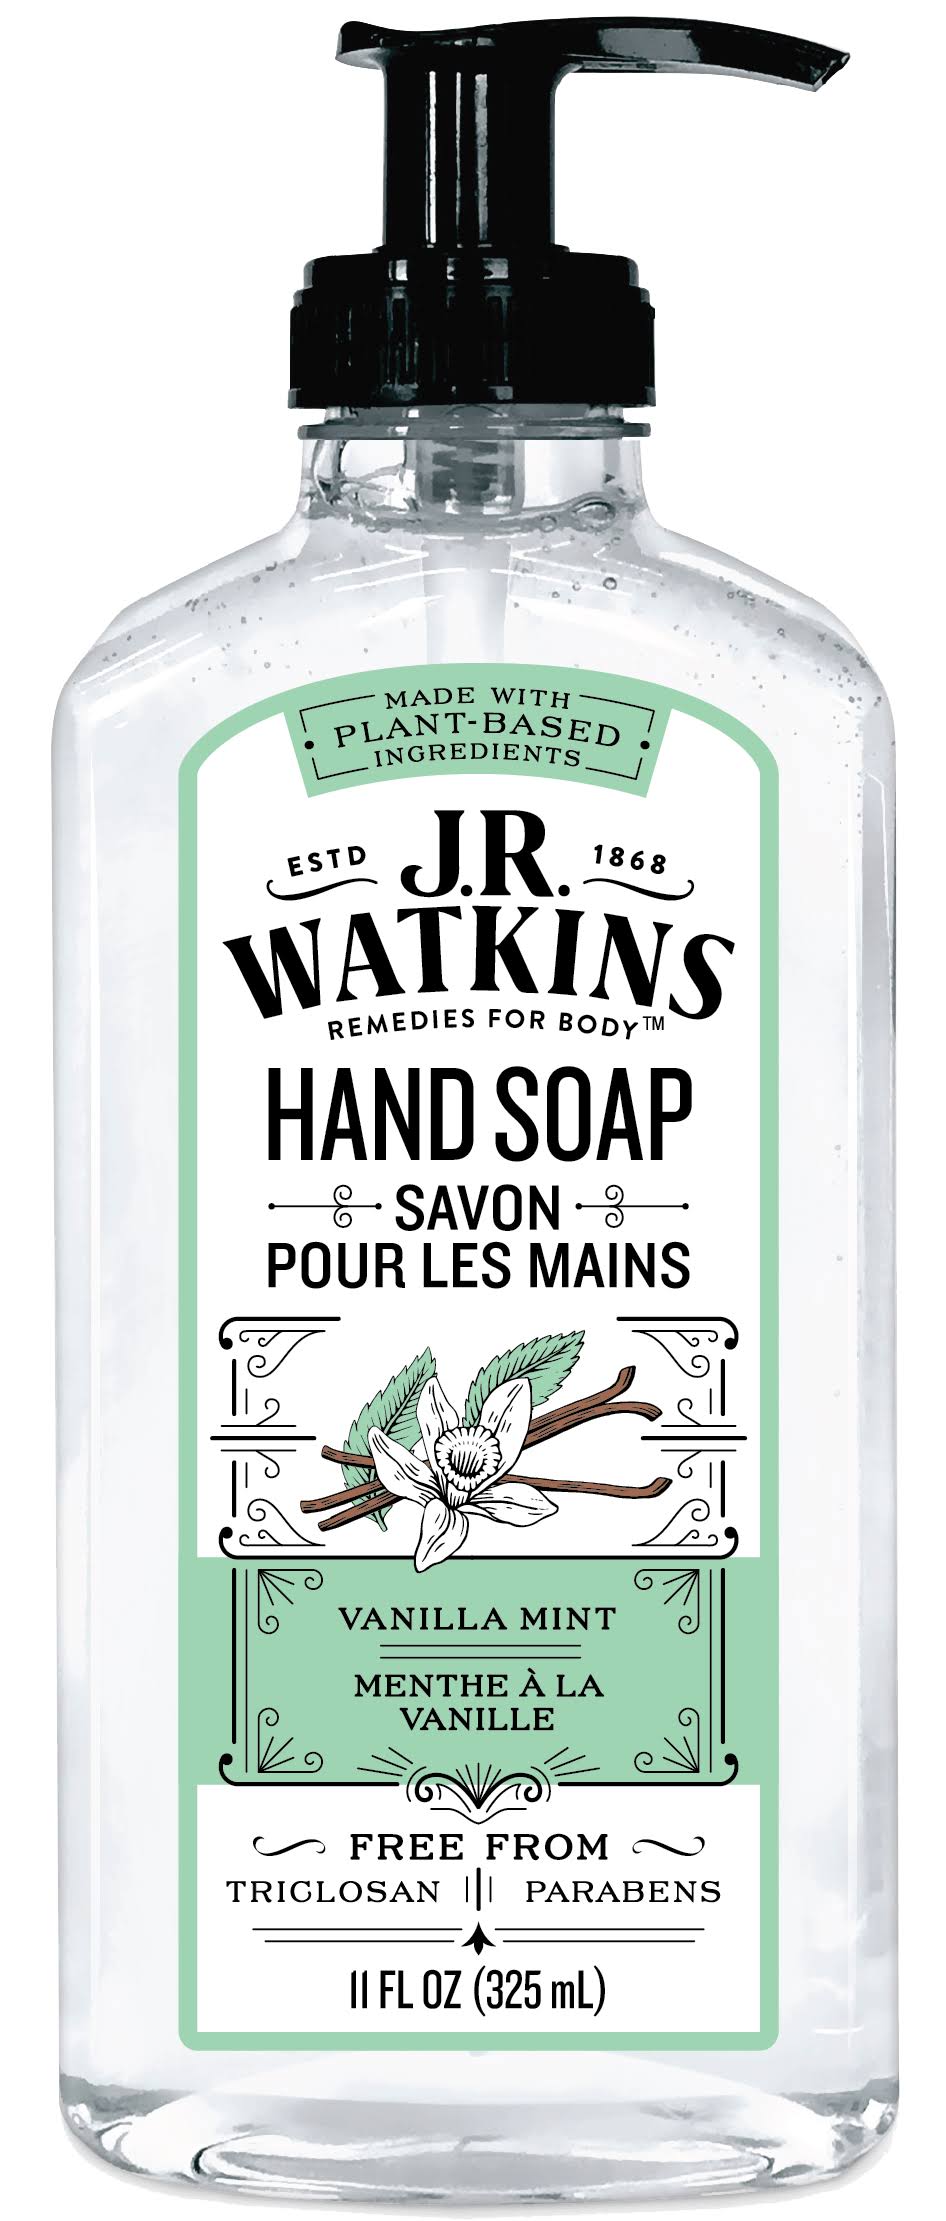 J R Watkins Hand Soap Vanilla Mint 11 FL oz (325 ml)